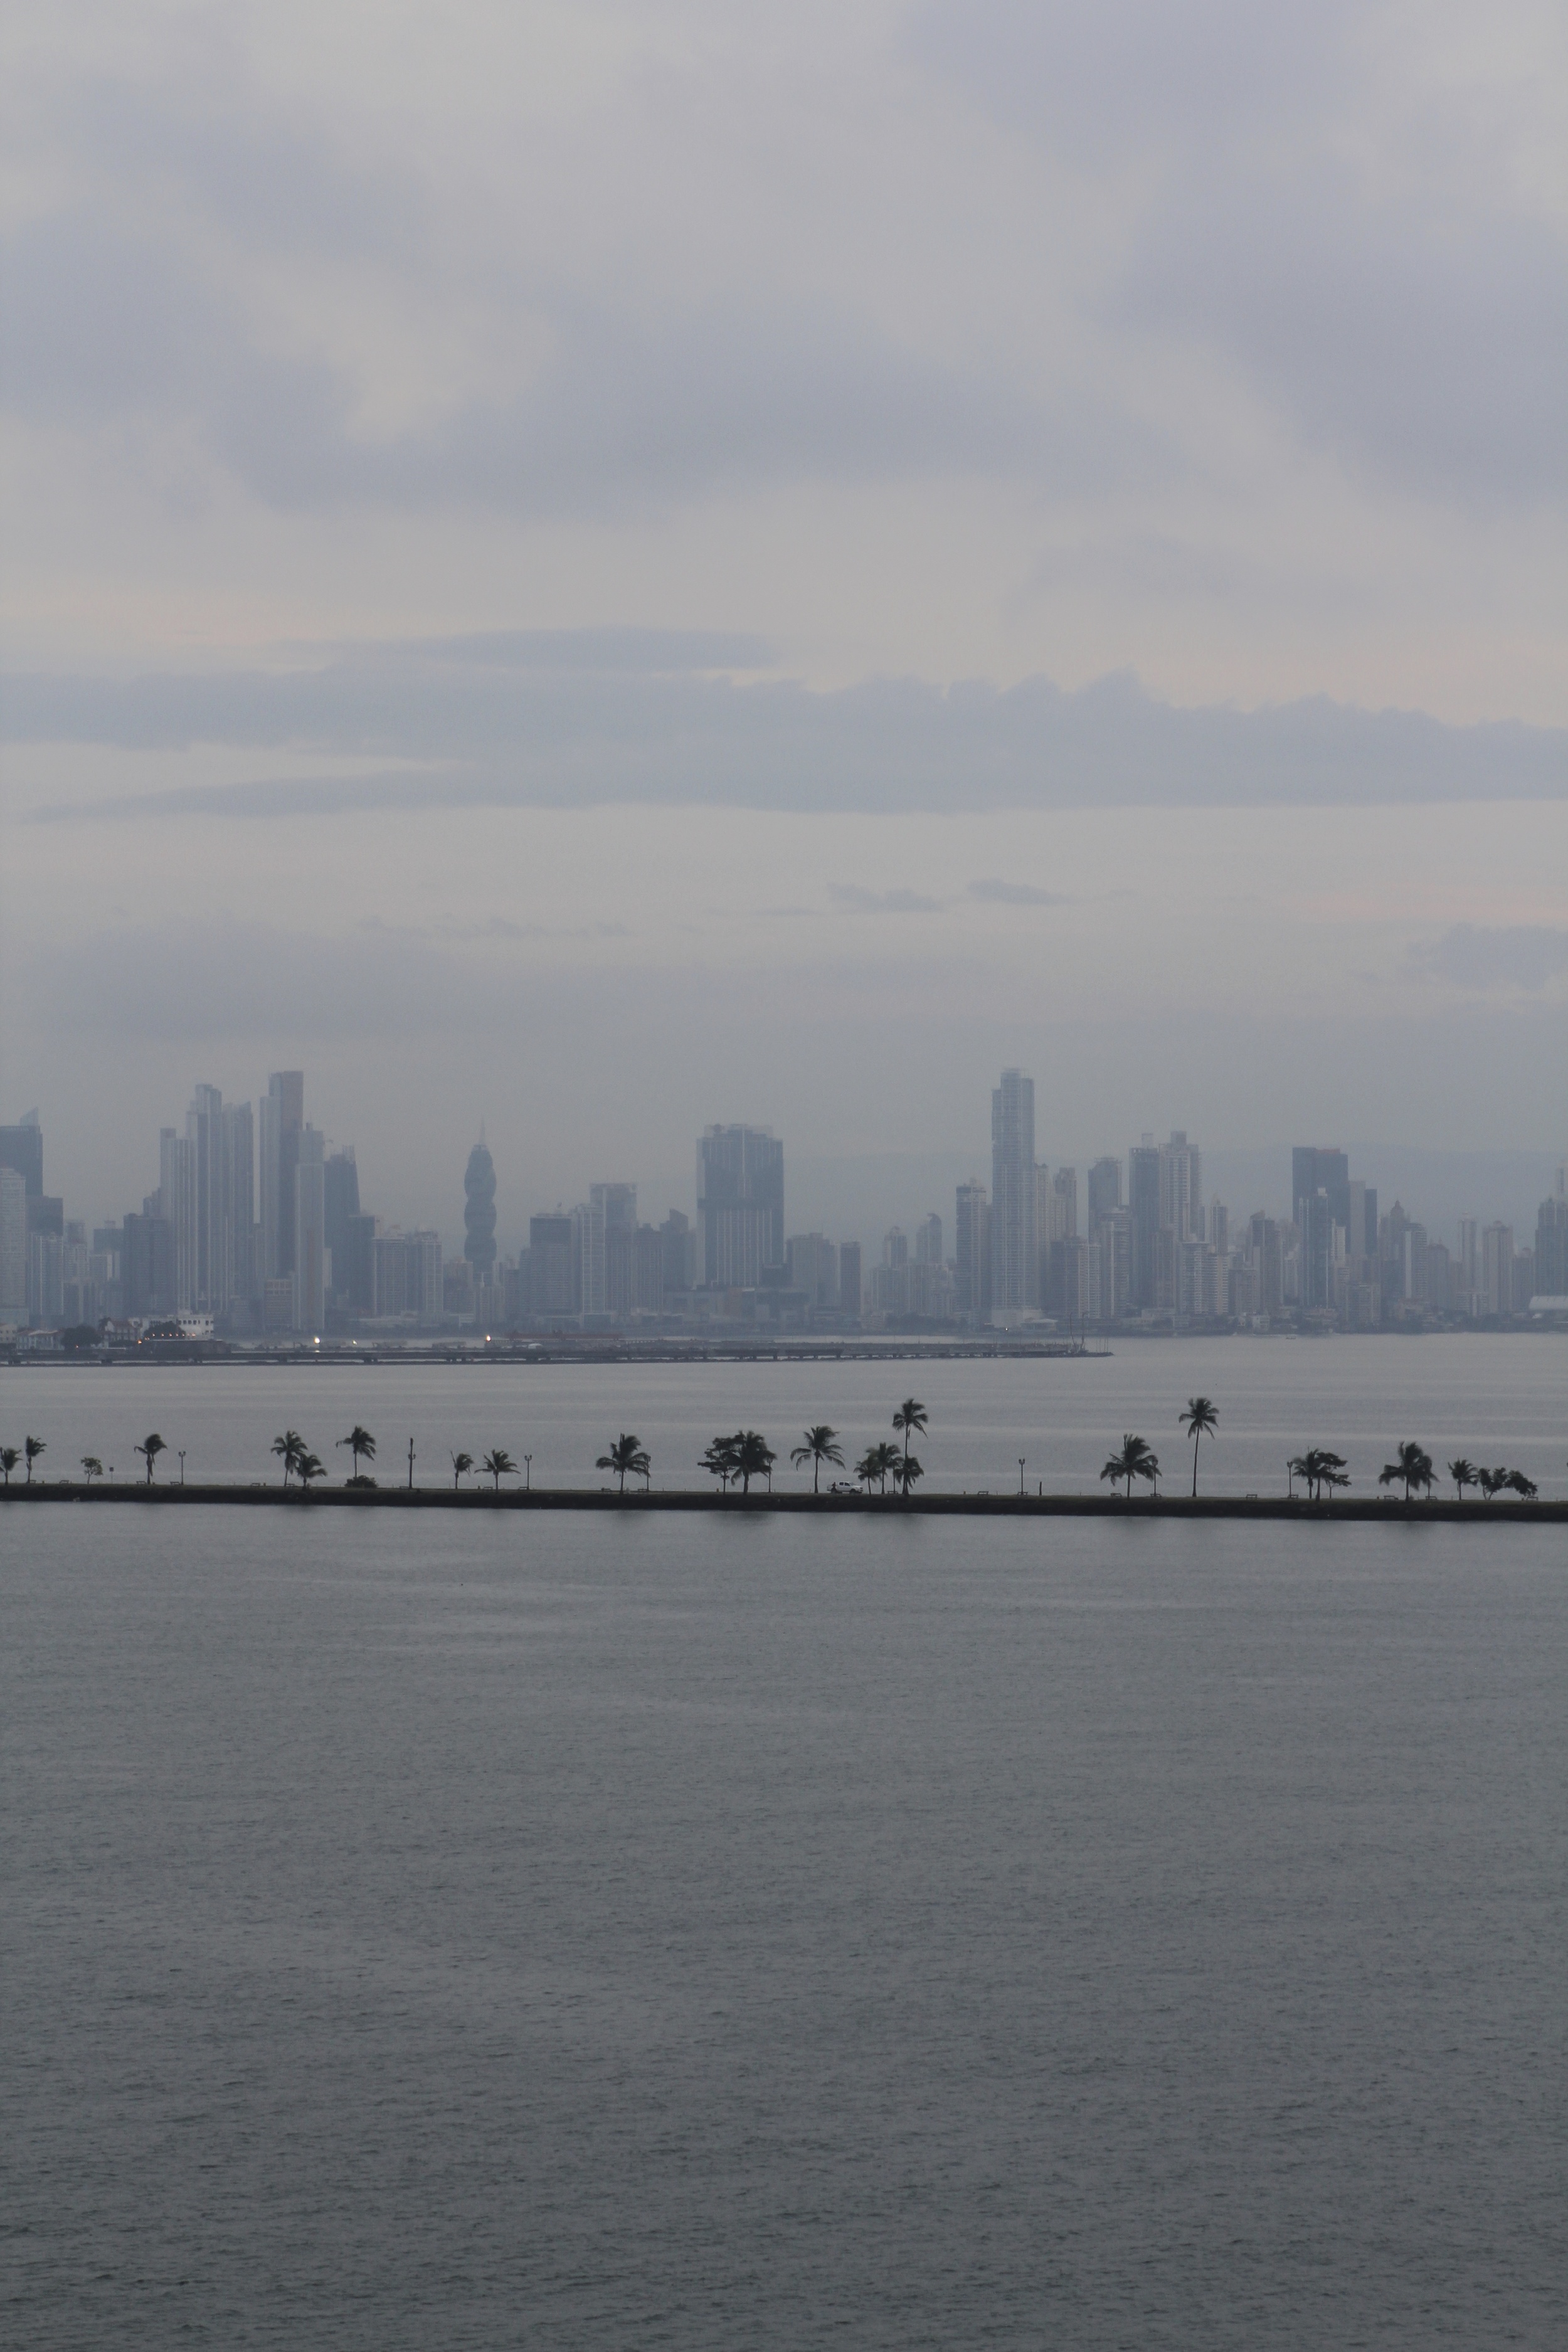 Panama City past the causeway.